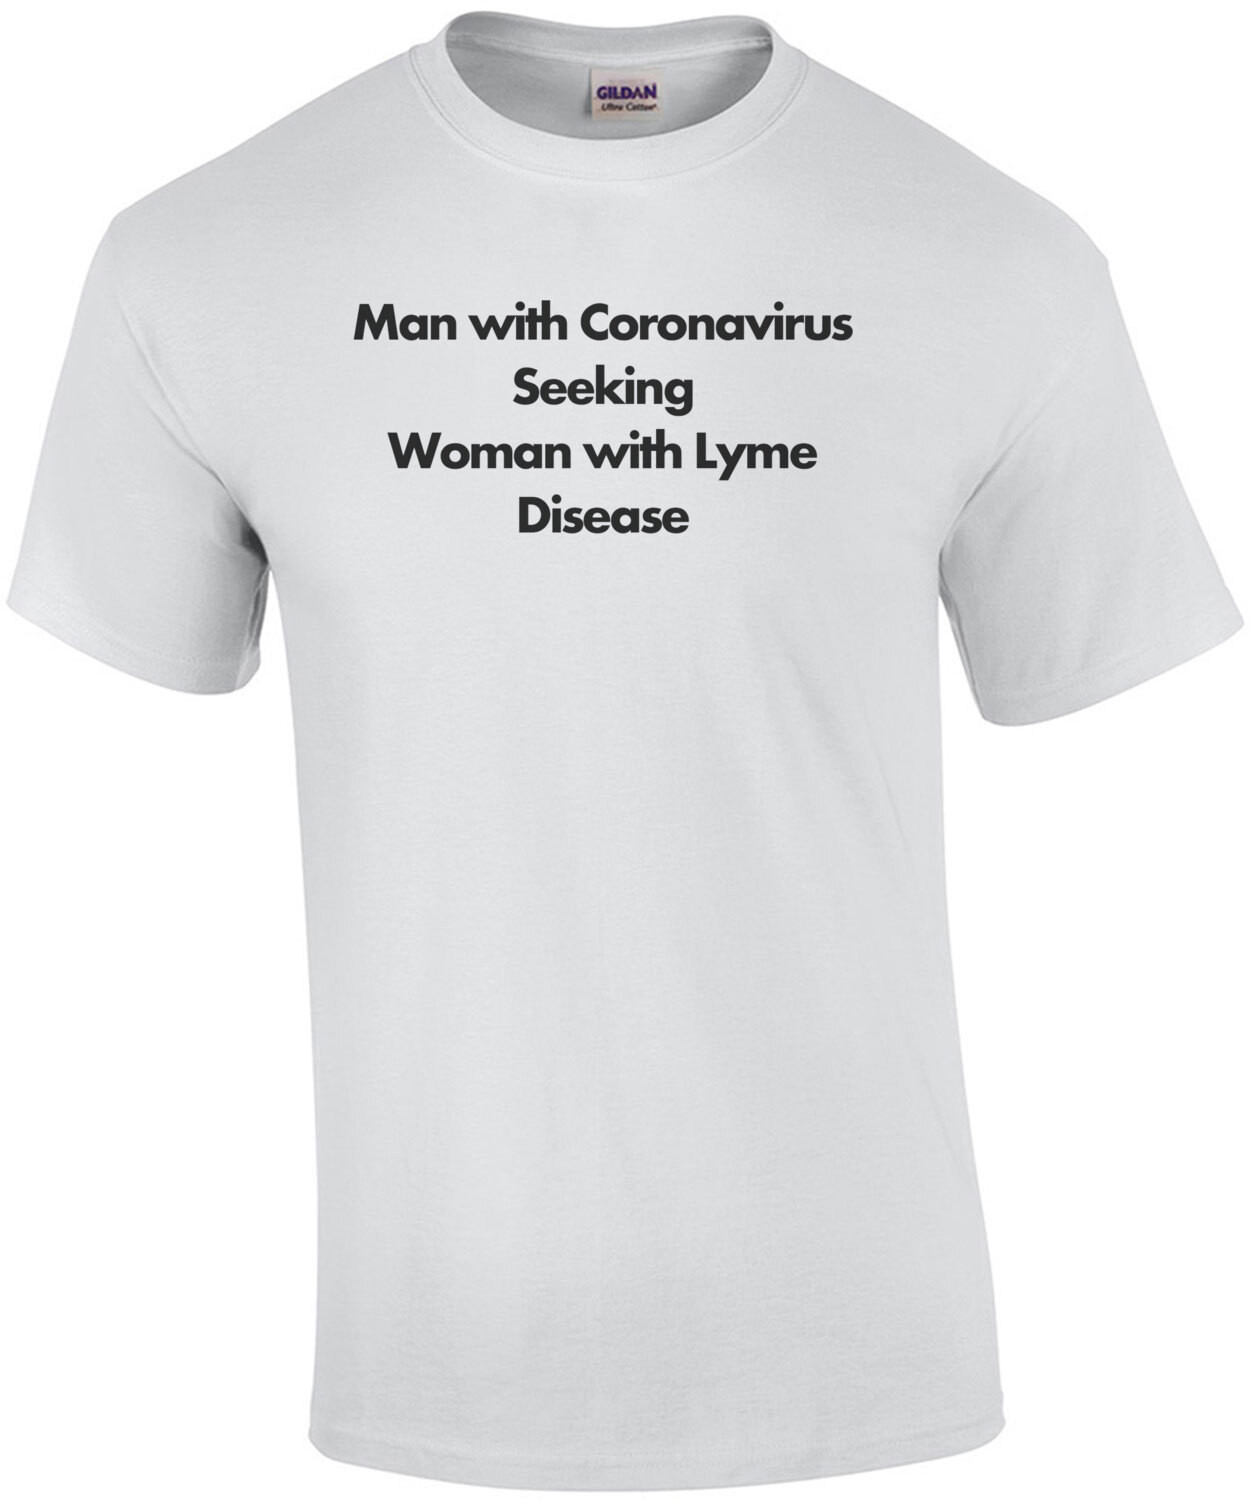 Man with Coronavirus seeking women with Lyme Disease - Coronavirus T-Shirt